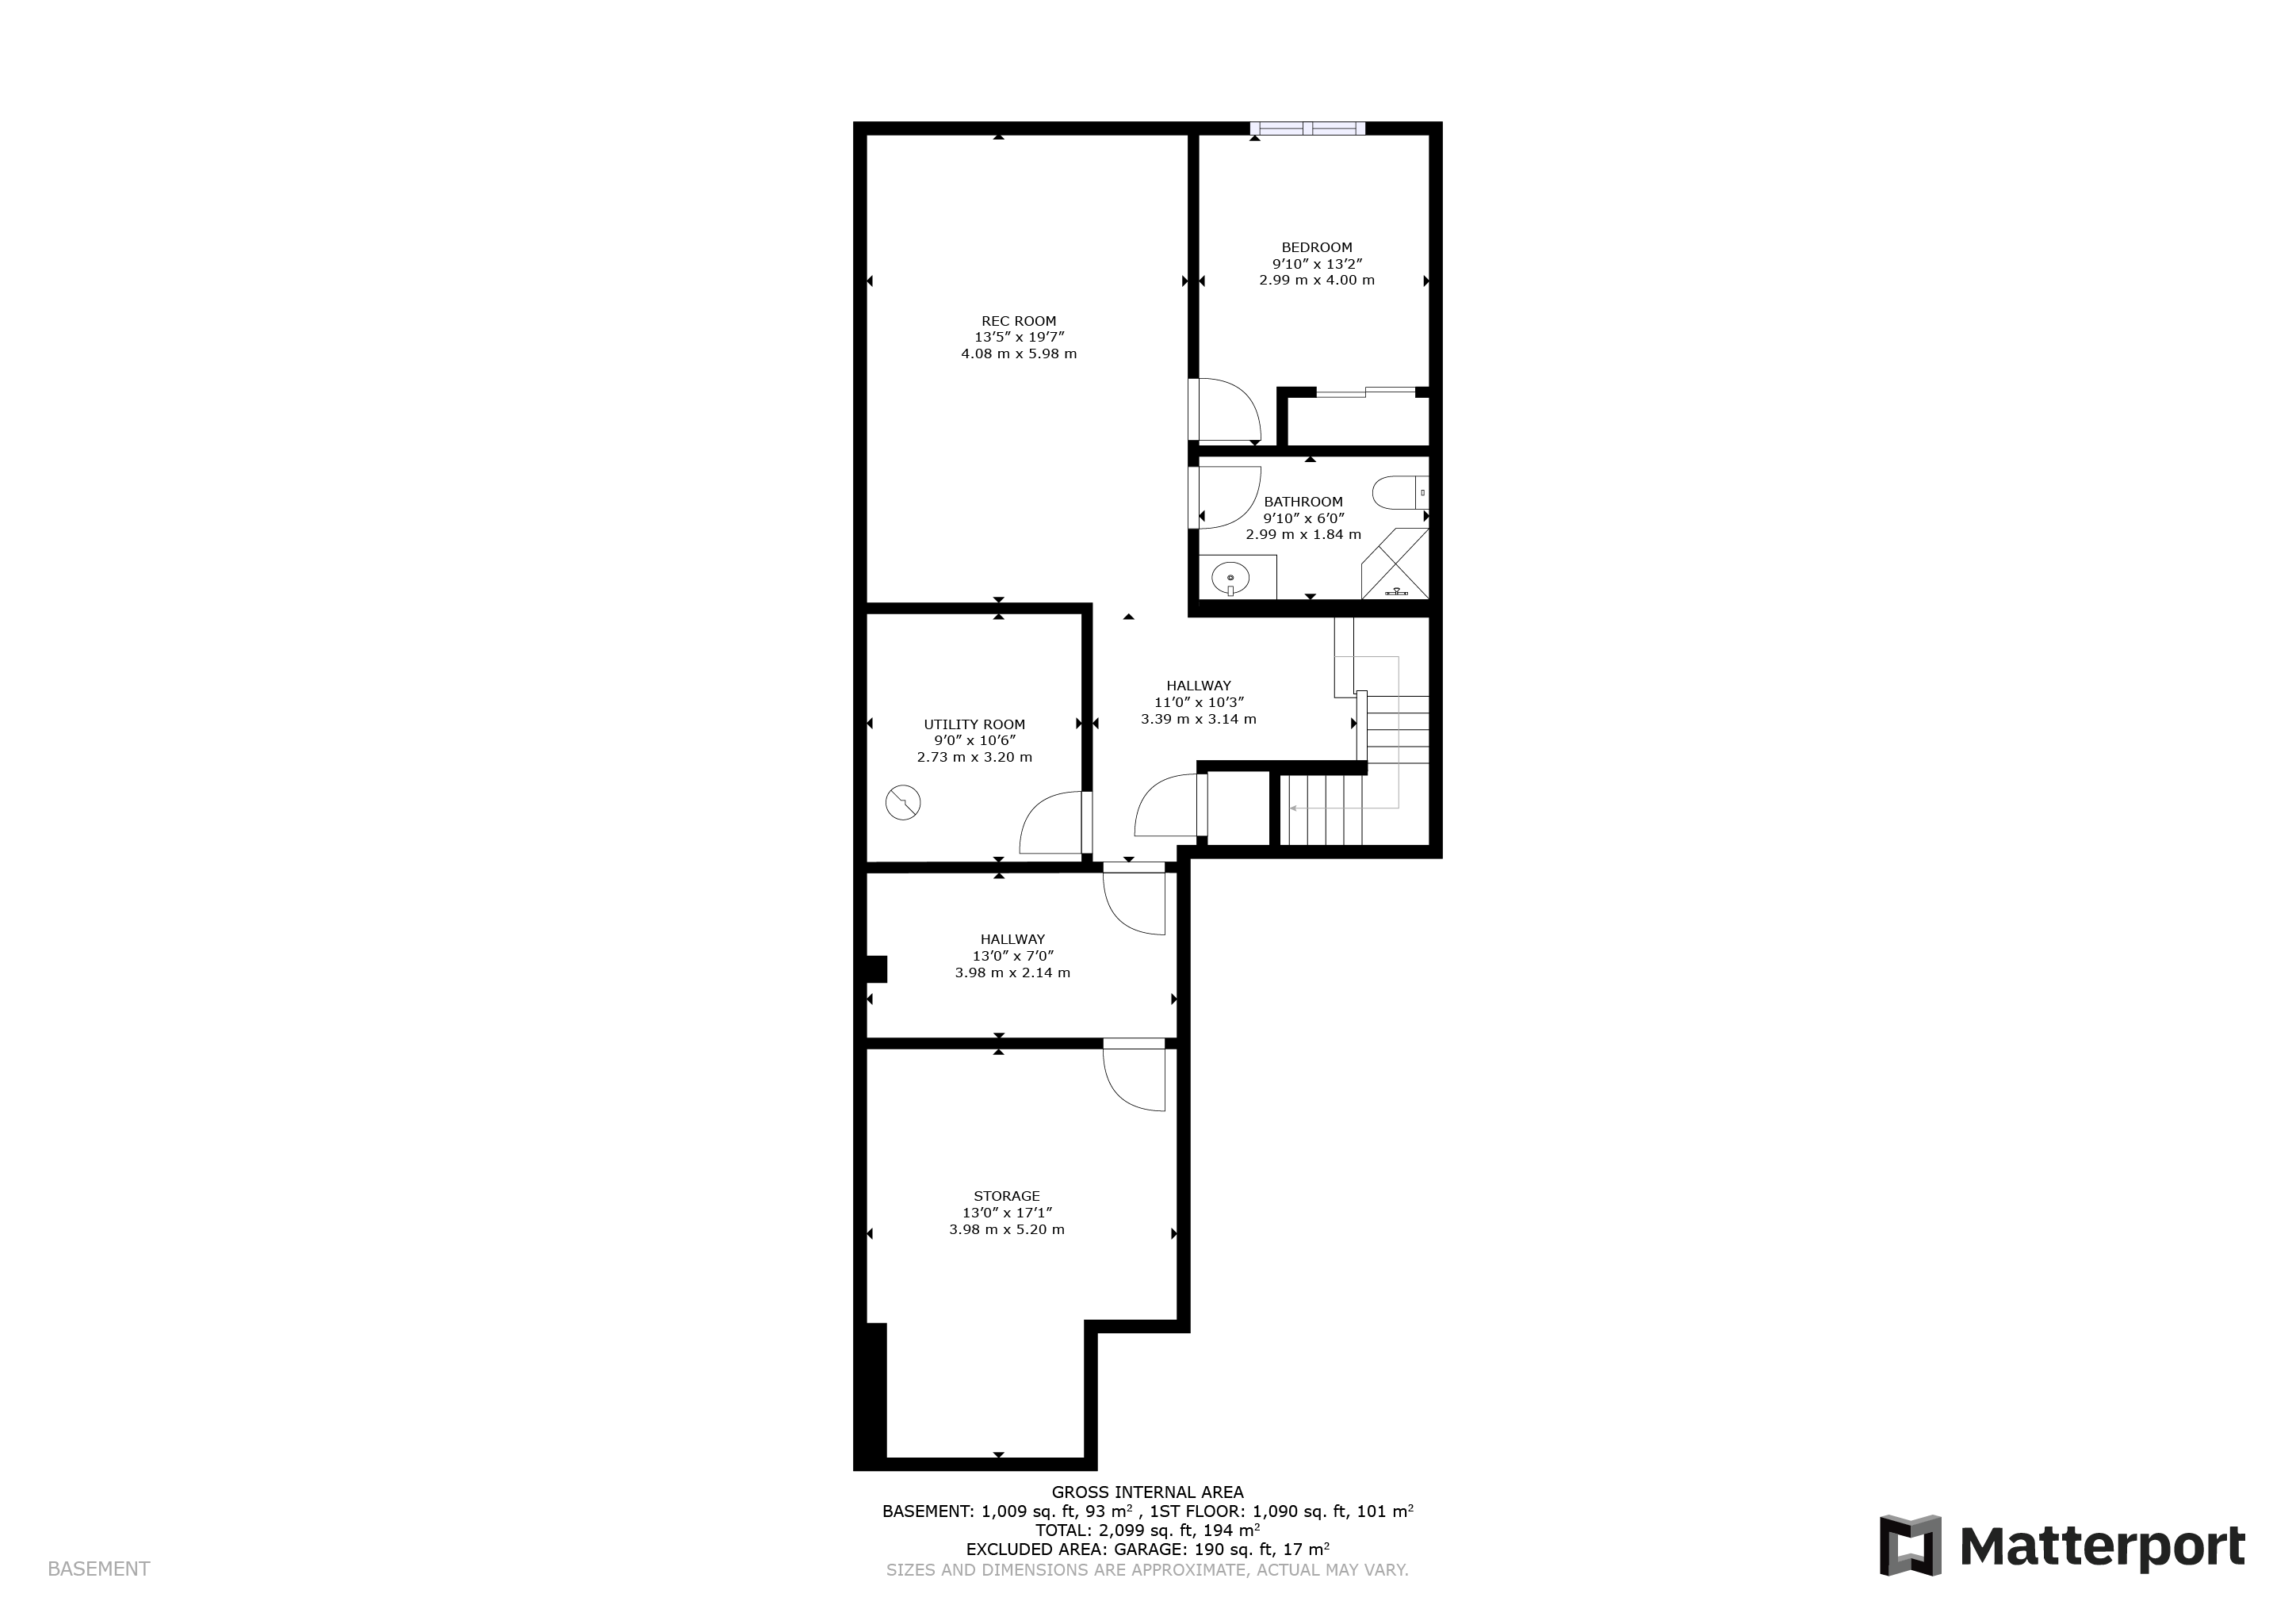 #2-16 Lane Ave - Floor Plans Basement